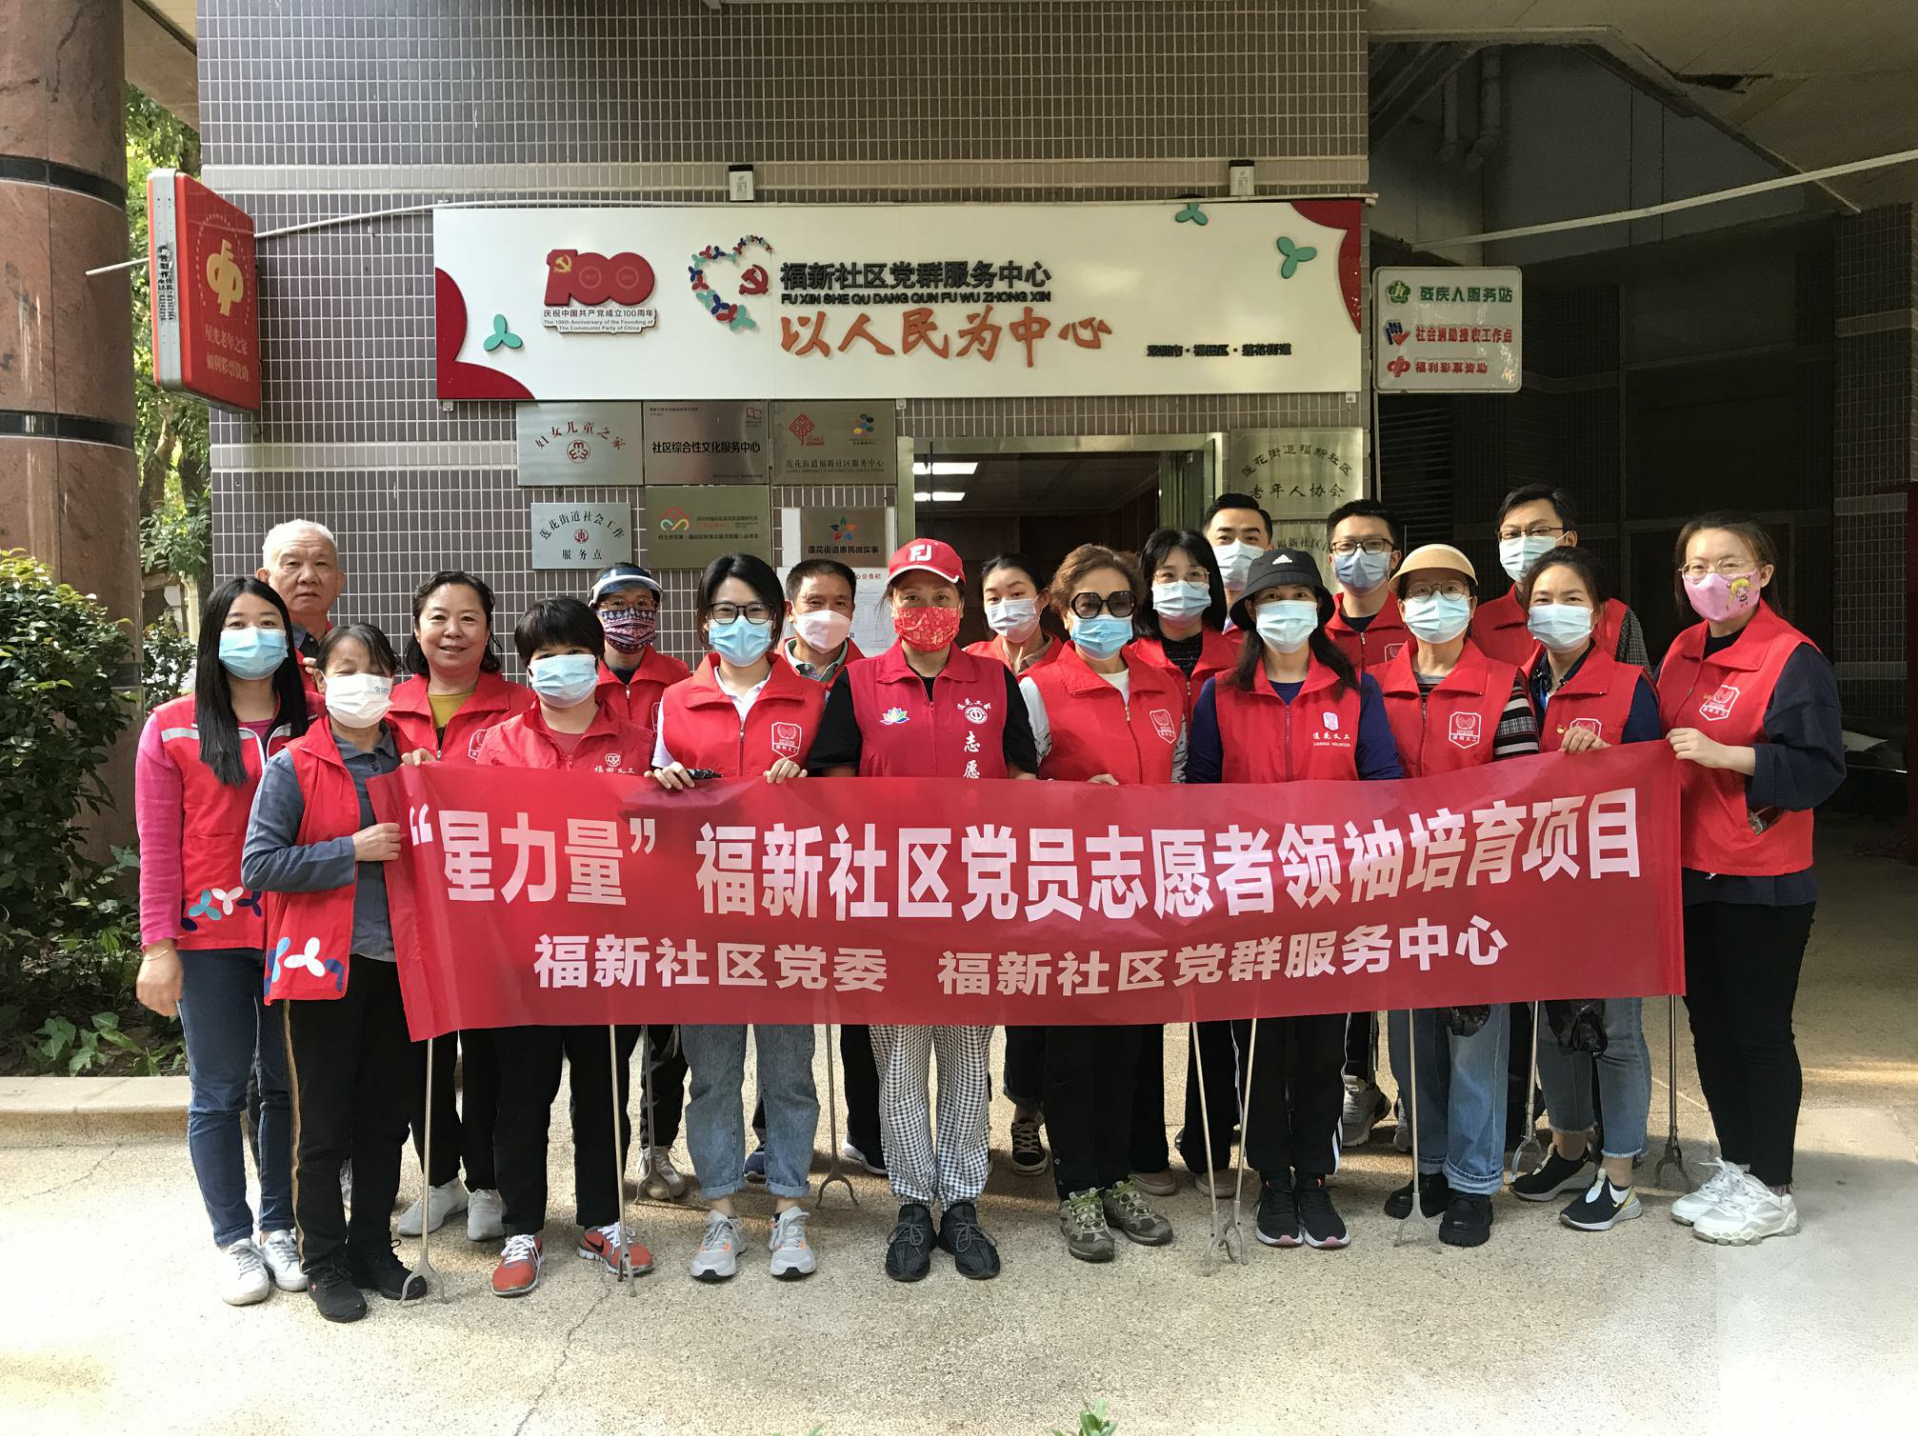 莲花街道福新社区“星力量”党员志愿领袖团建活动如期举行